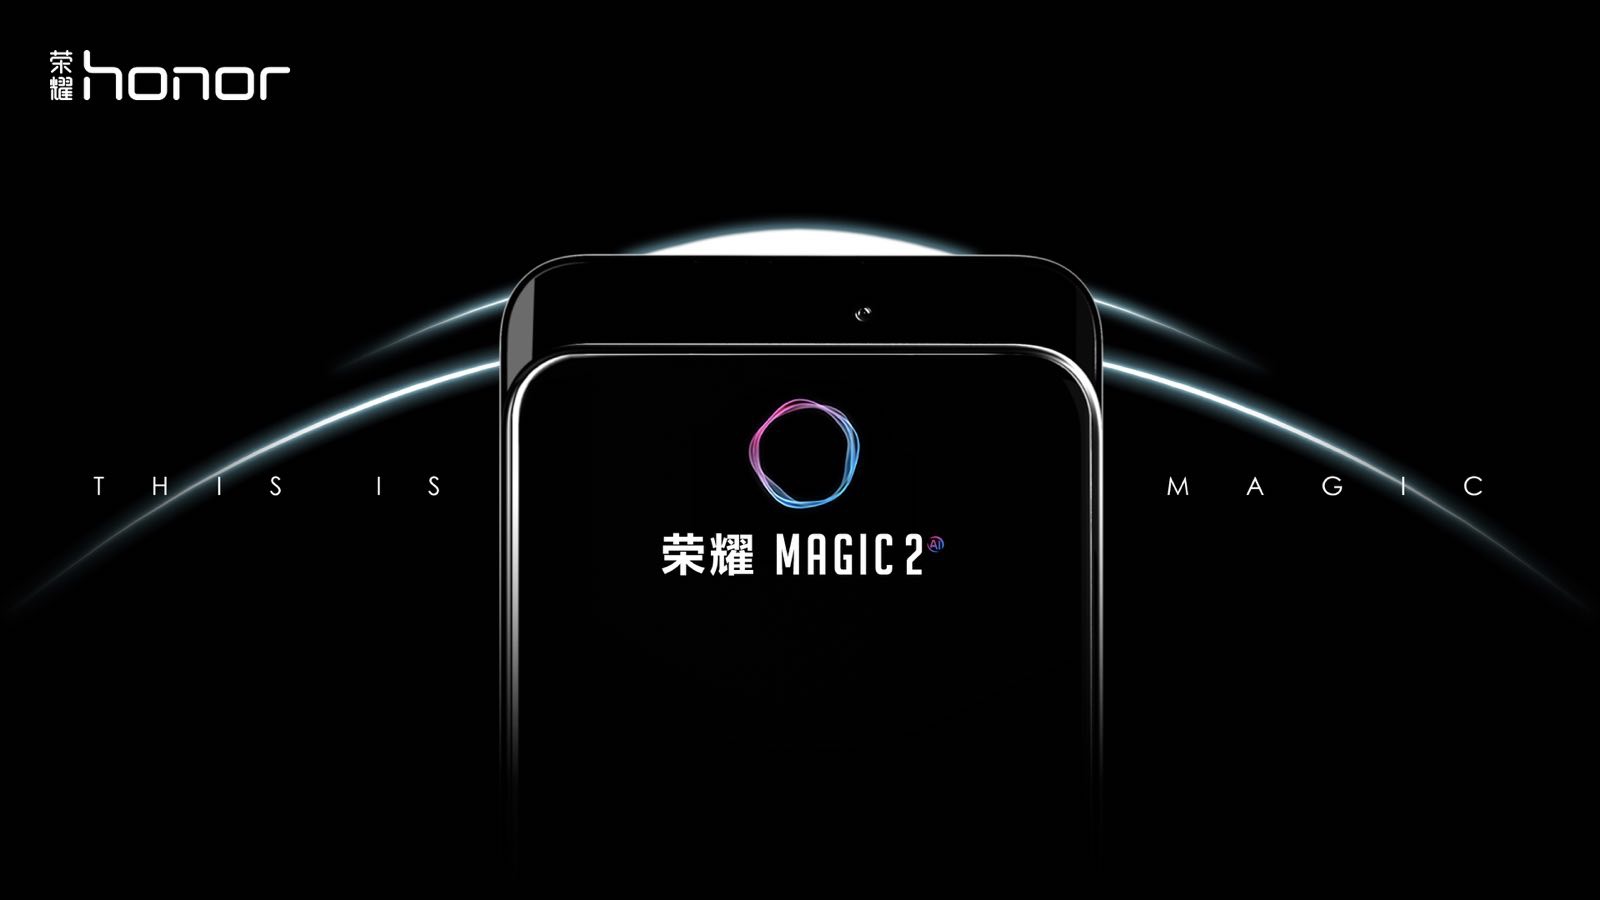 Honor magic 2 where can buy in china ac45bhe fernane